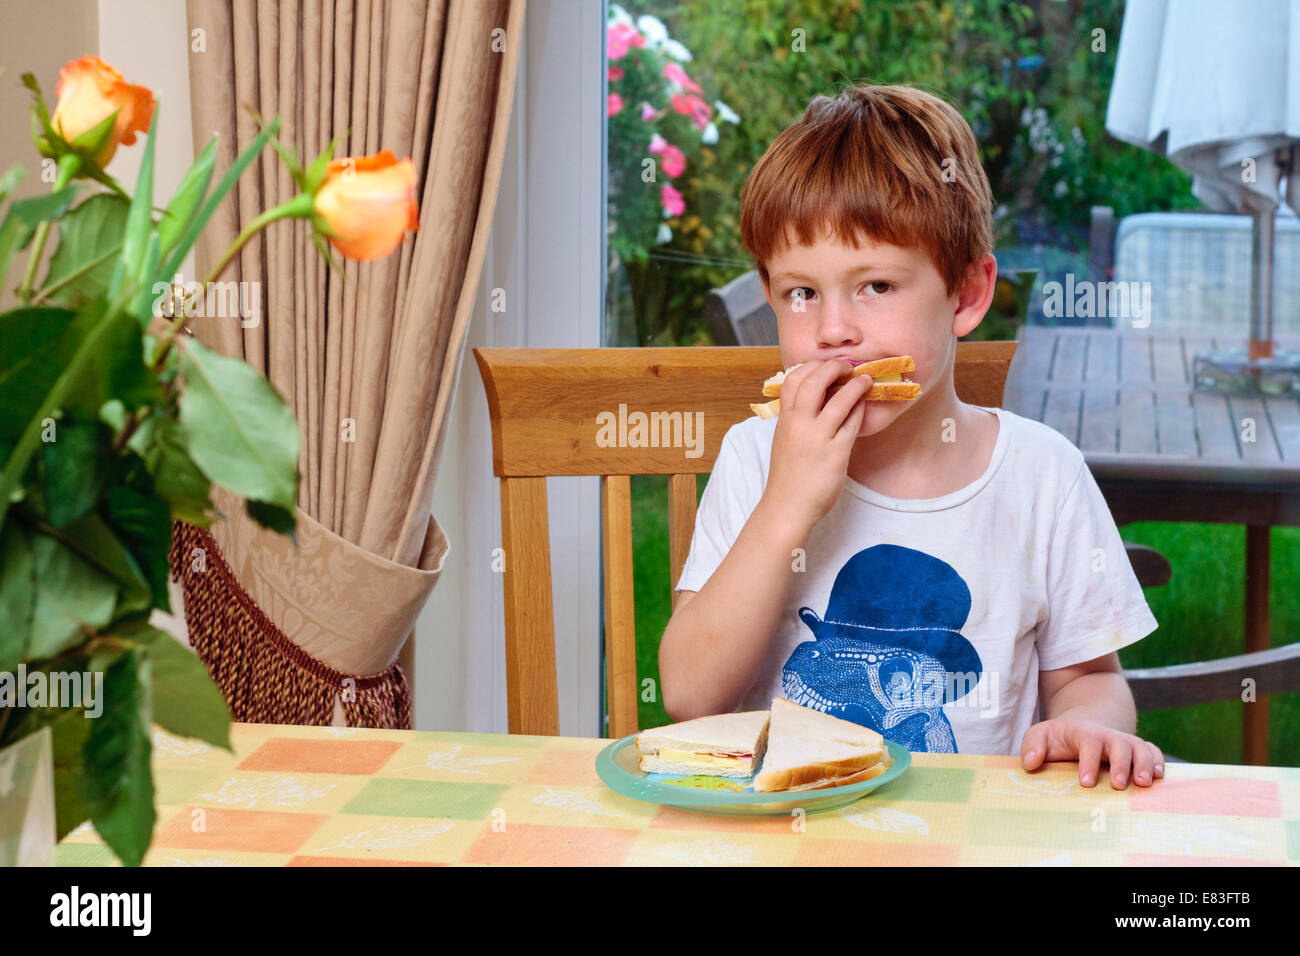 Ein kleiner Junge saß an einem Tisch essen einen sandwich Stockfoto